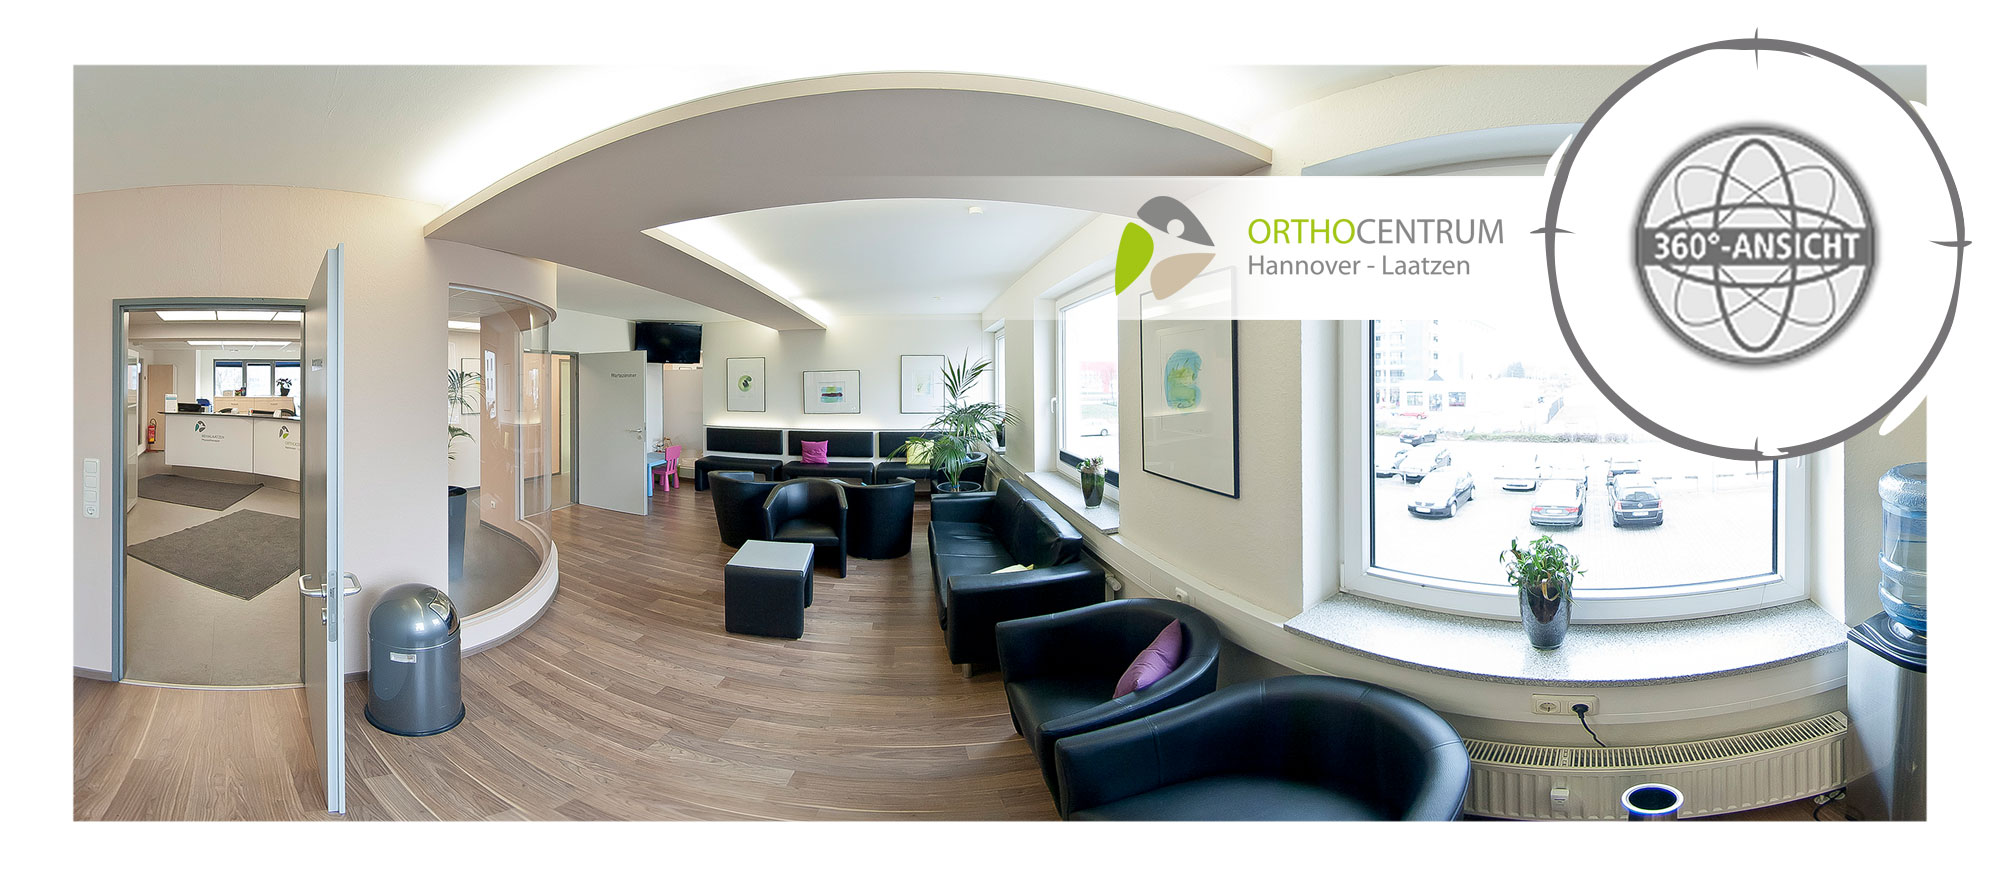 Virtuelle Tour Orthocentrum Hannover-Laatzen | Heydenbluth Design Werbung aus Barsinghausen